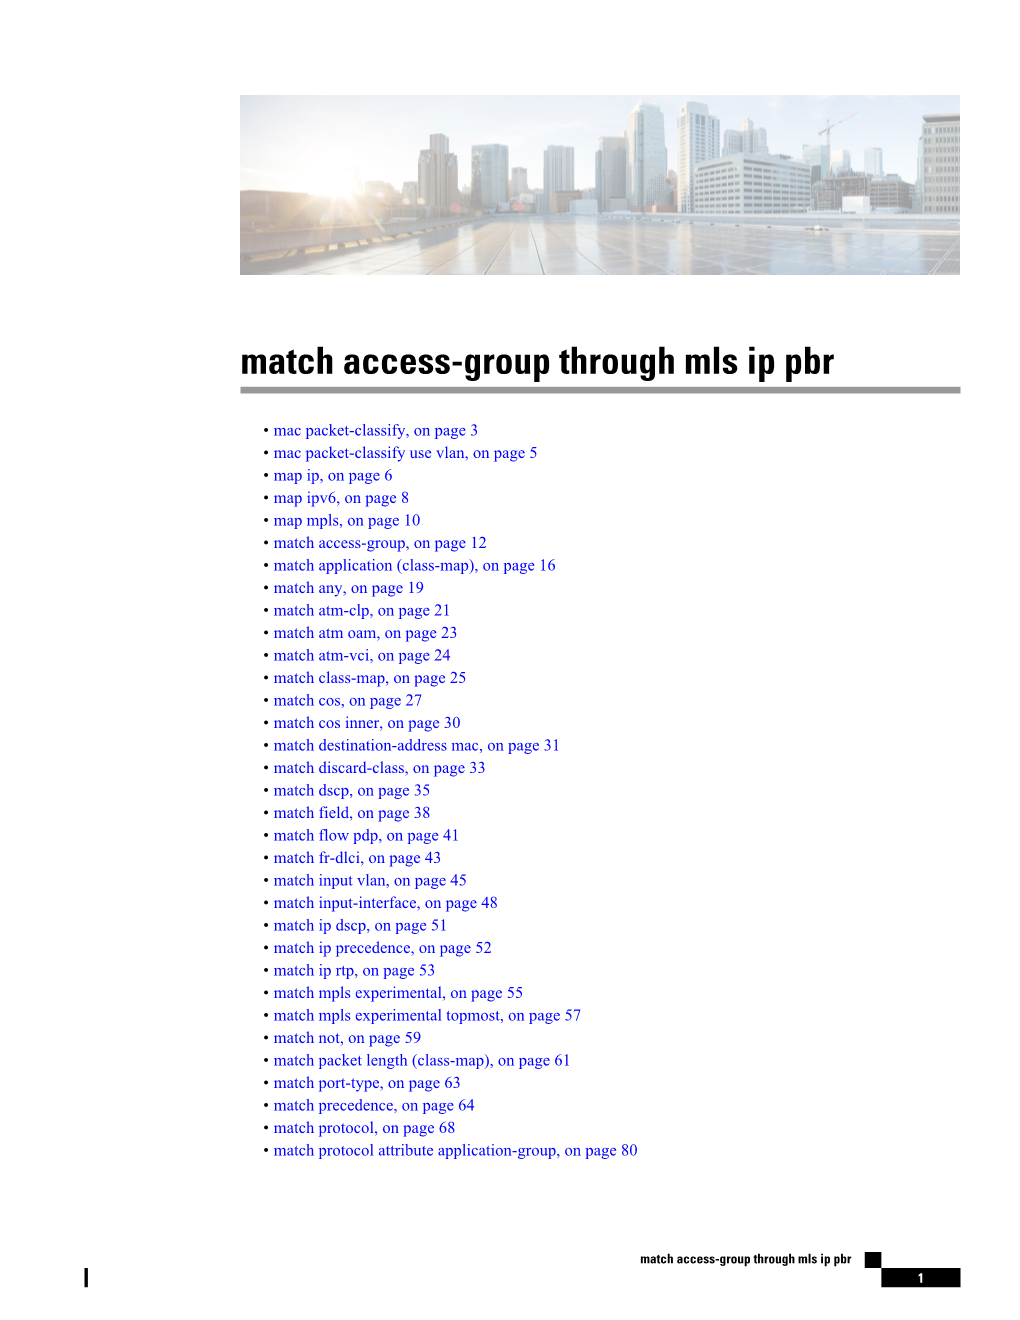 Match Access-Group Through Mls Ip Pbr